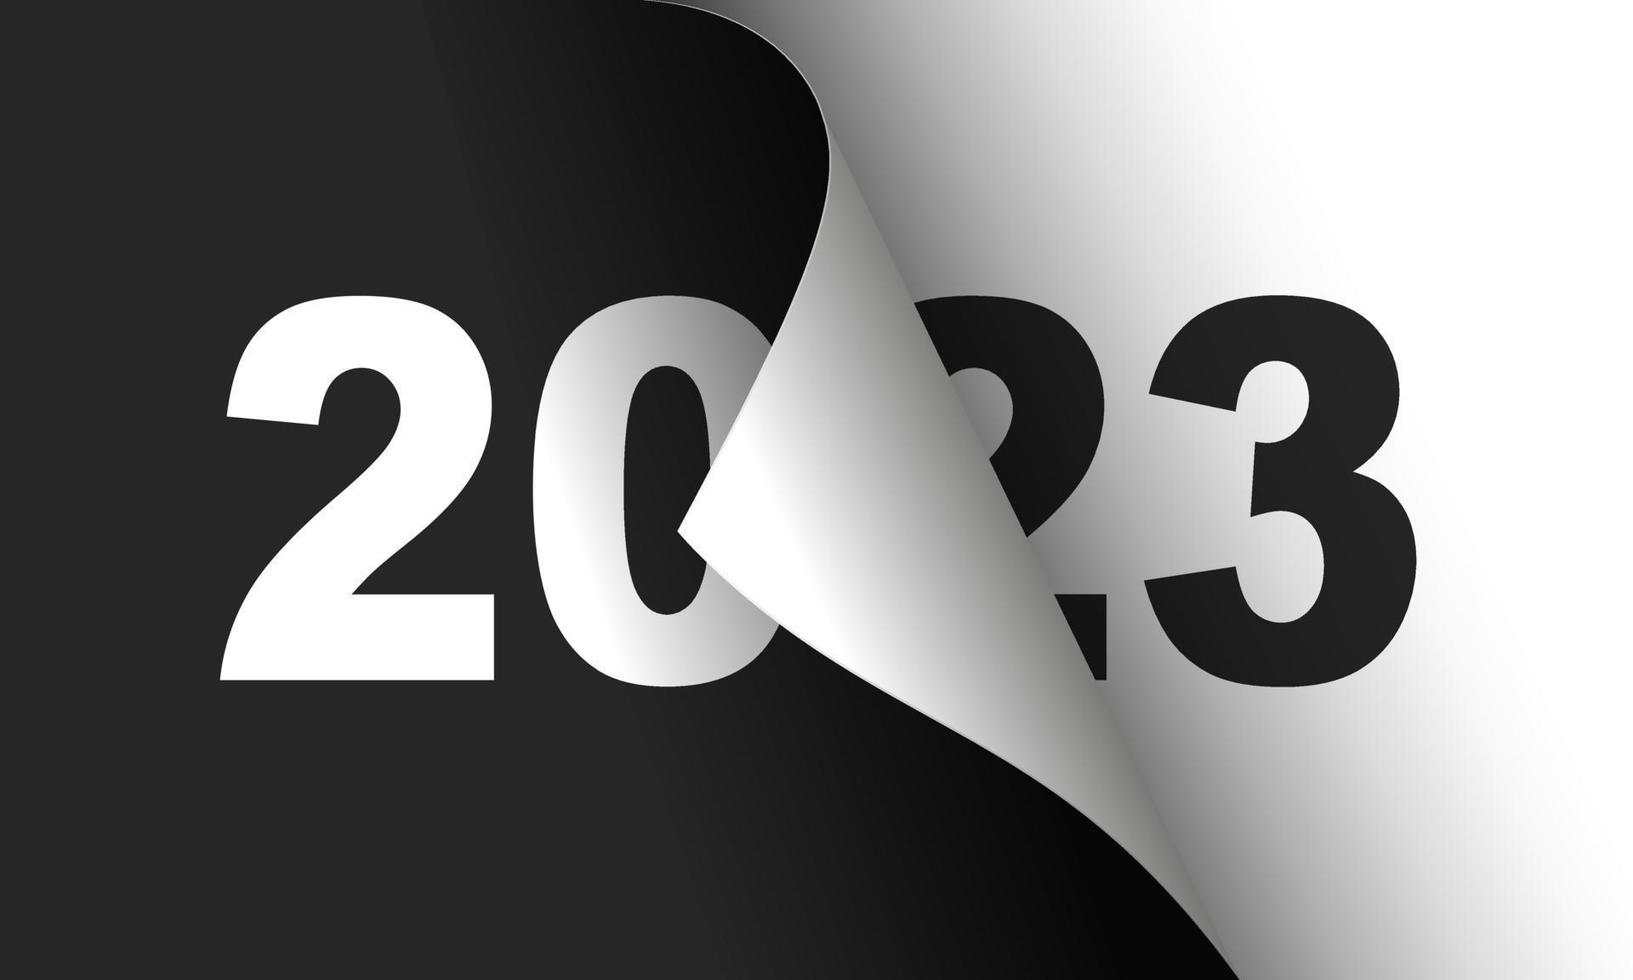 modello di progettazione biglietto di auguri felice anno nuovo 2023. fine 2022 e inizio 2023. il concetto dell'inizio del nuovo anno. la pagina del calendario si gira e inizia il nuovo anno. vettore